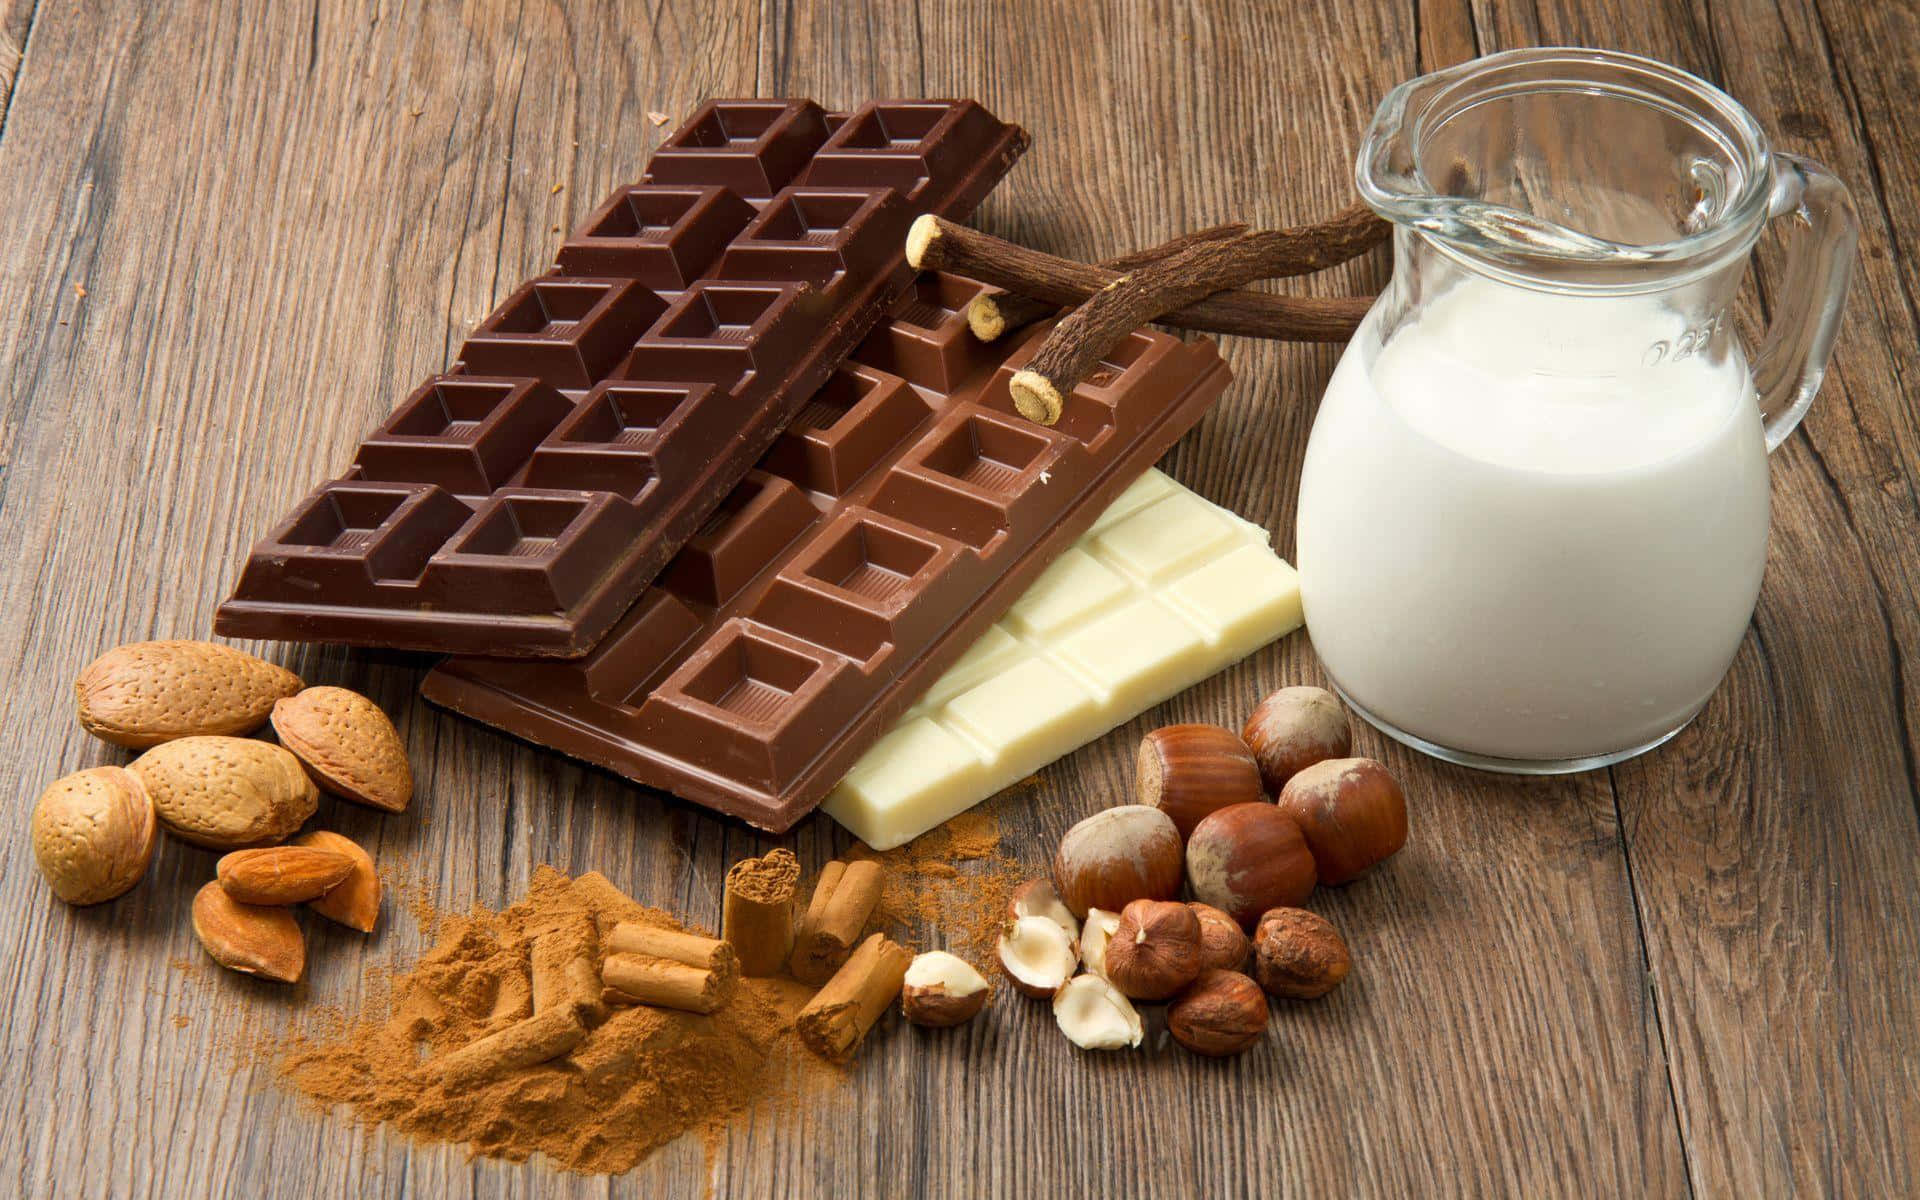 Chokolade,nødder, Mælk Og Mandler På Et Træbord.